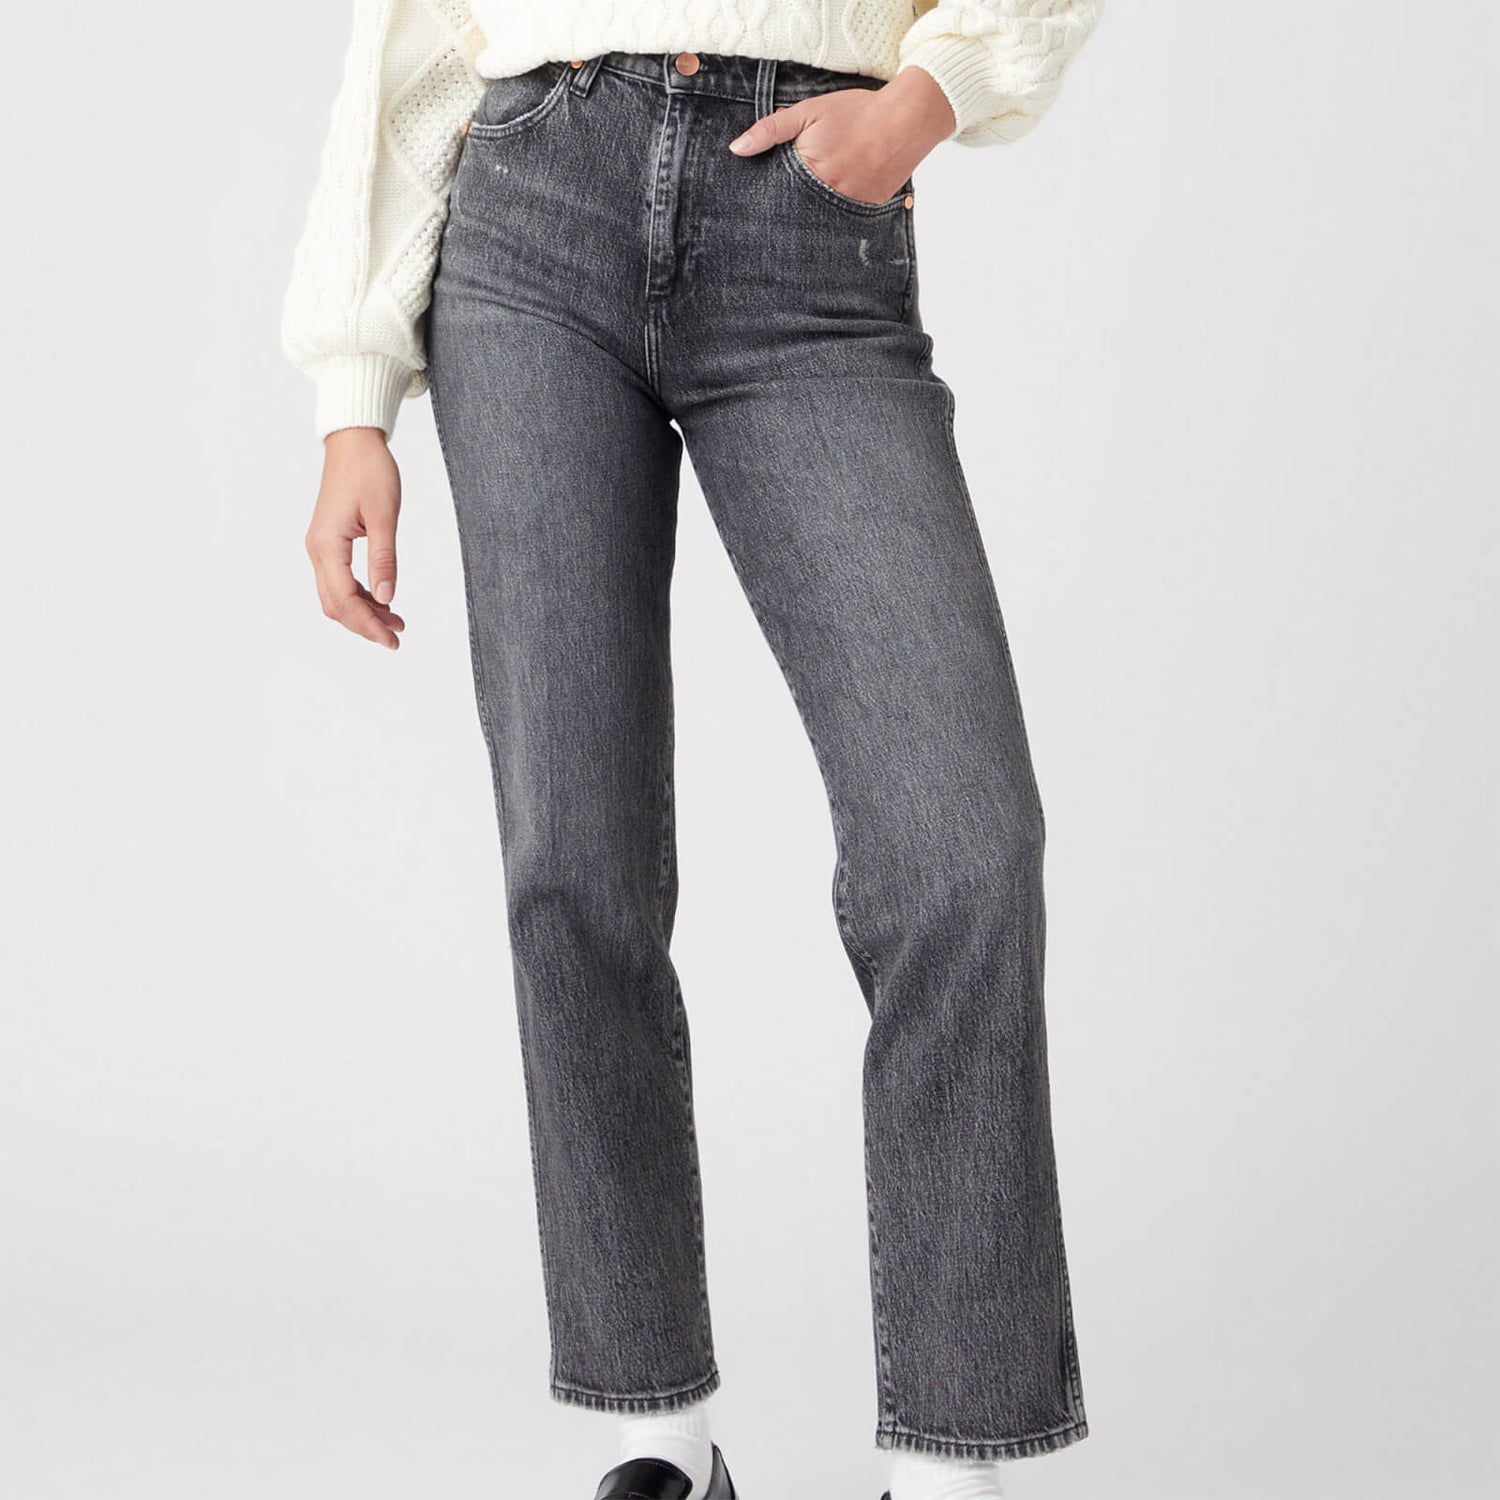 Wrangler Mom Straight Denim-Blend Jeans - W28 L30